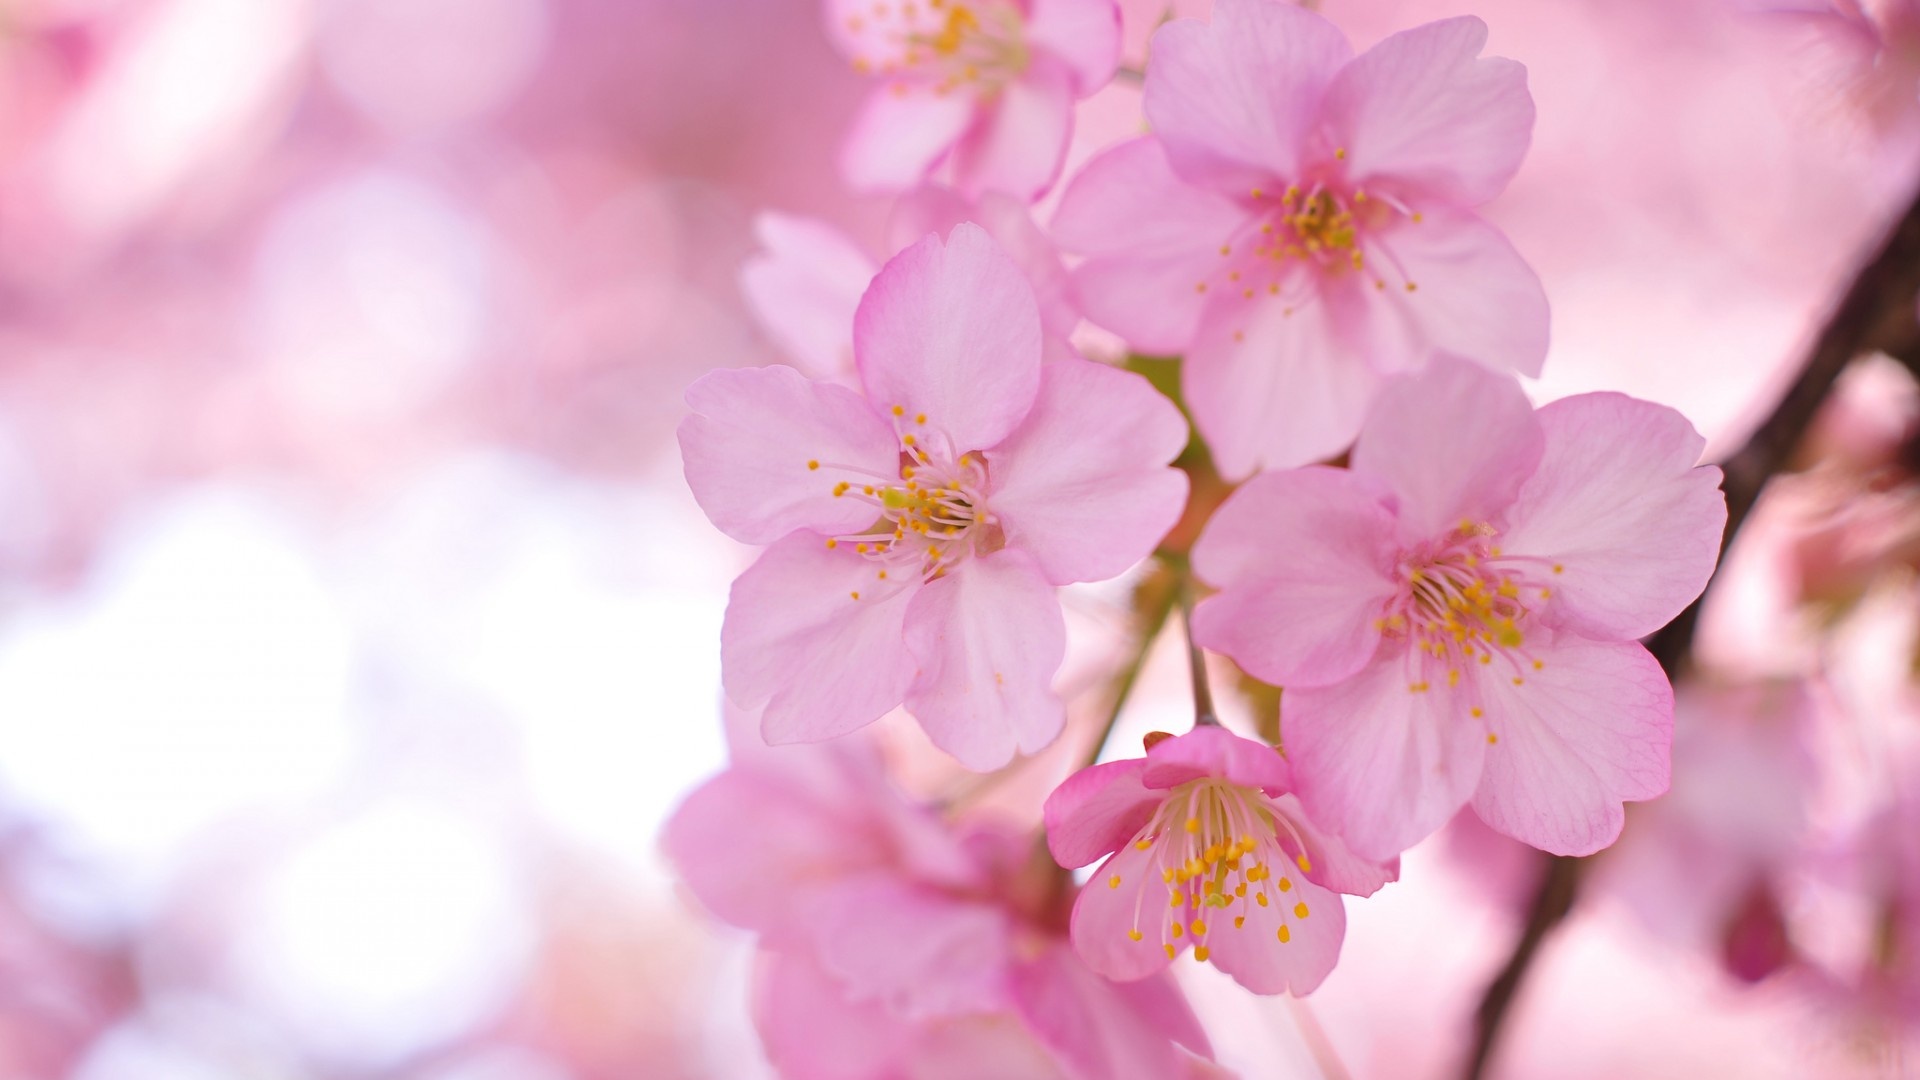 indah mekarnya bunga sakura